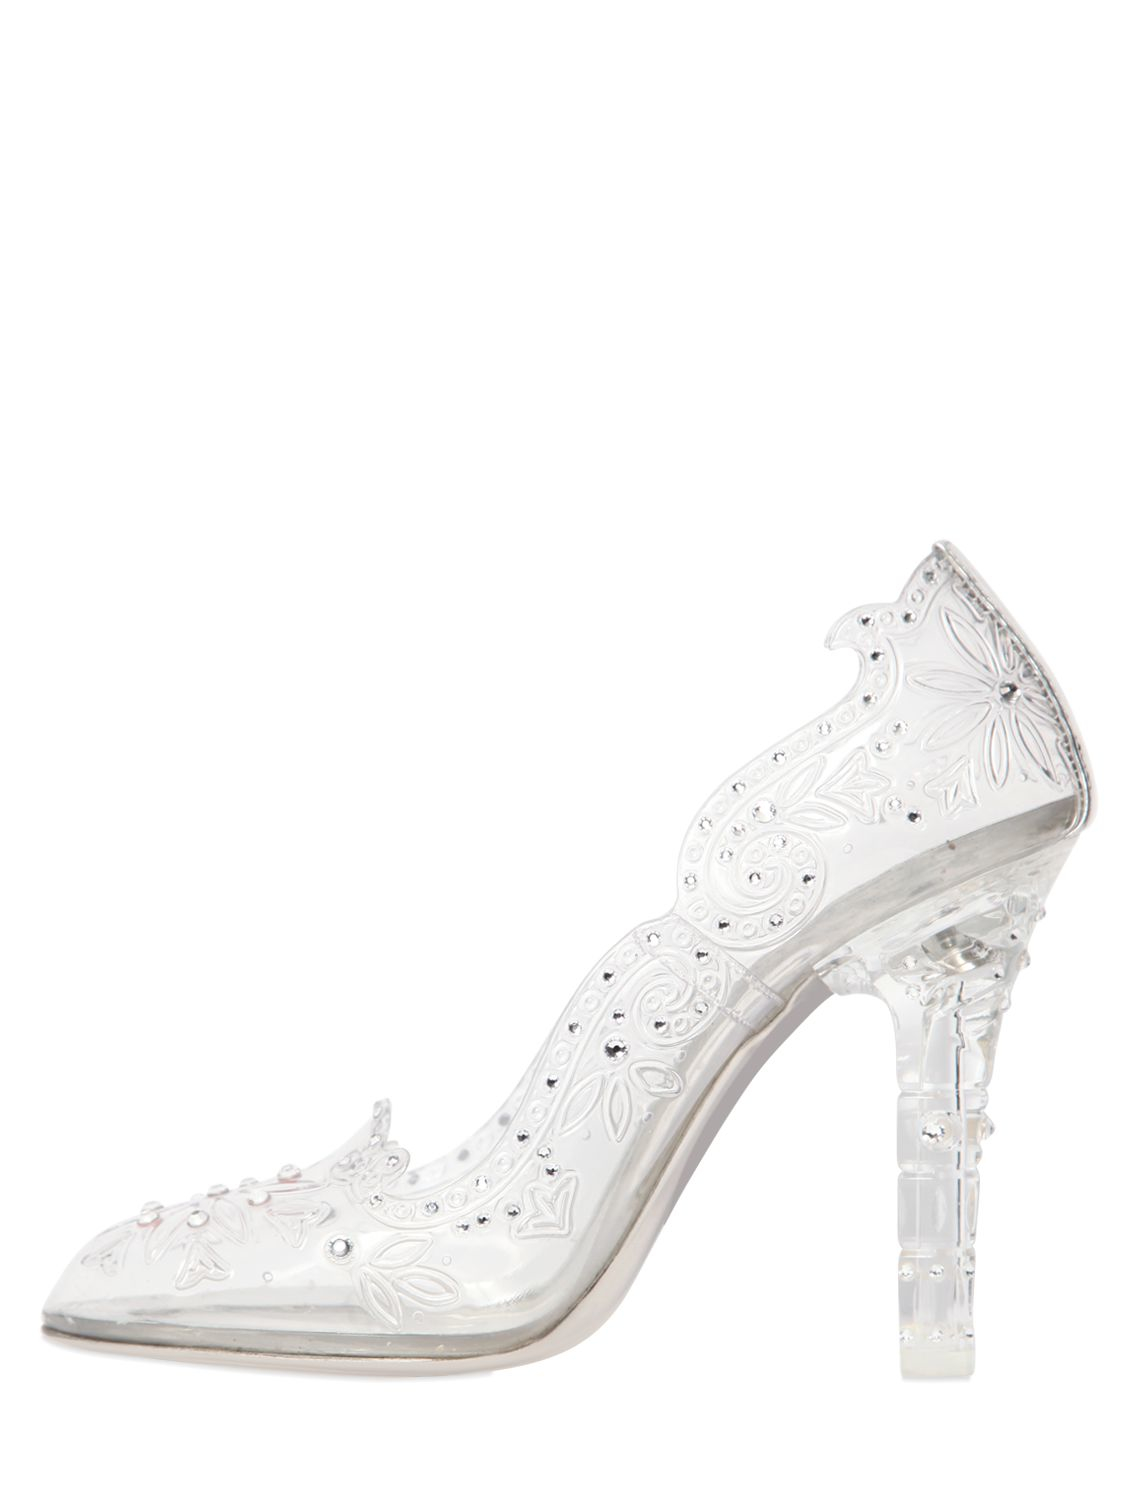 Dolce & gabbana Clear Cinderella Heels in White | Lyst